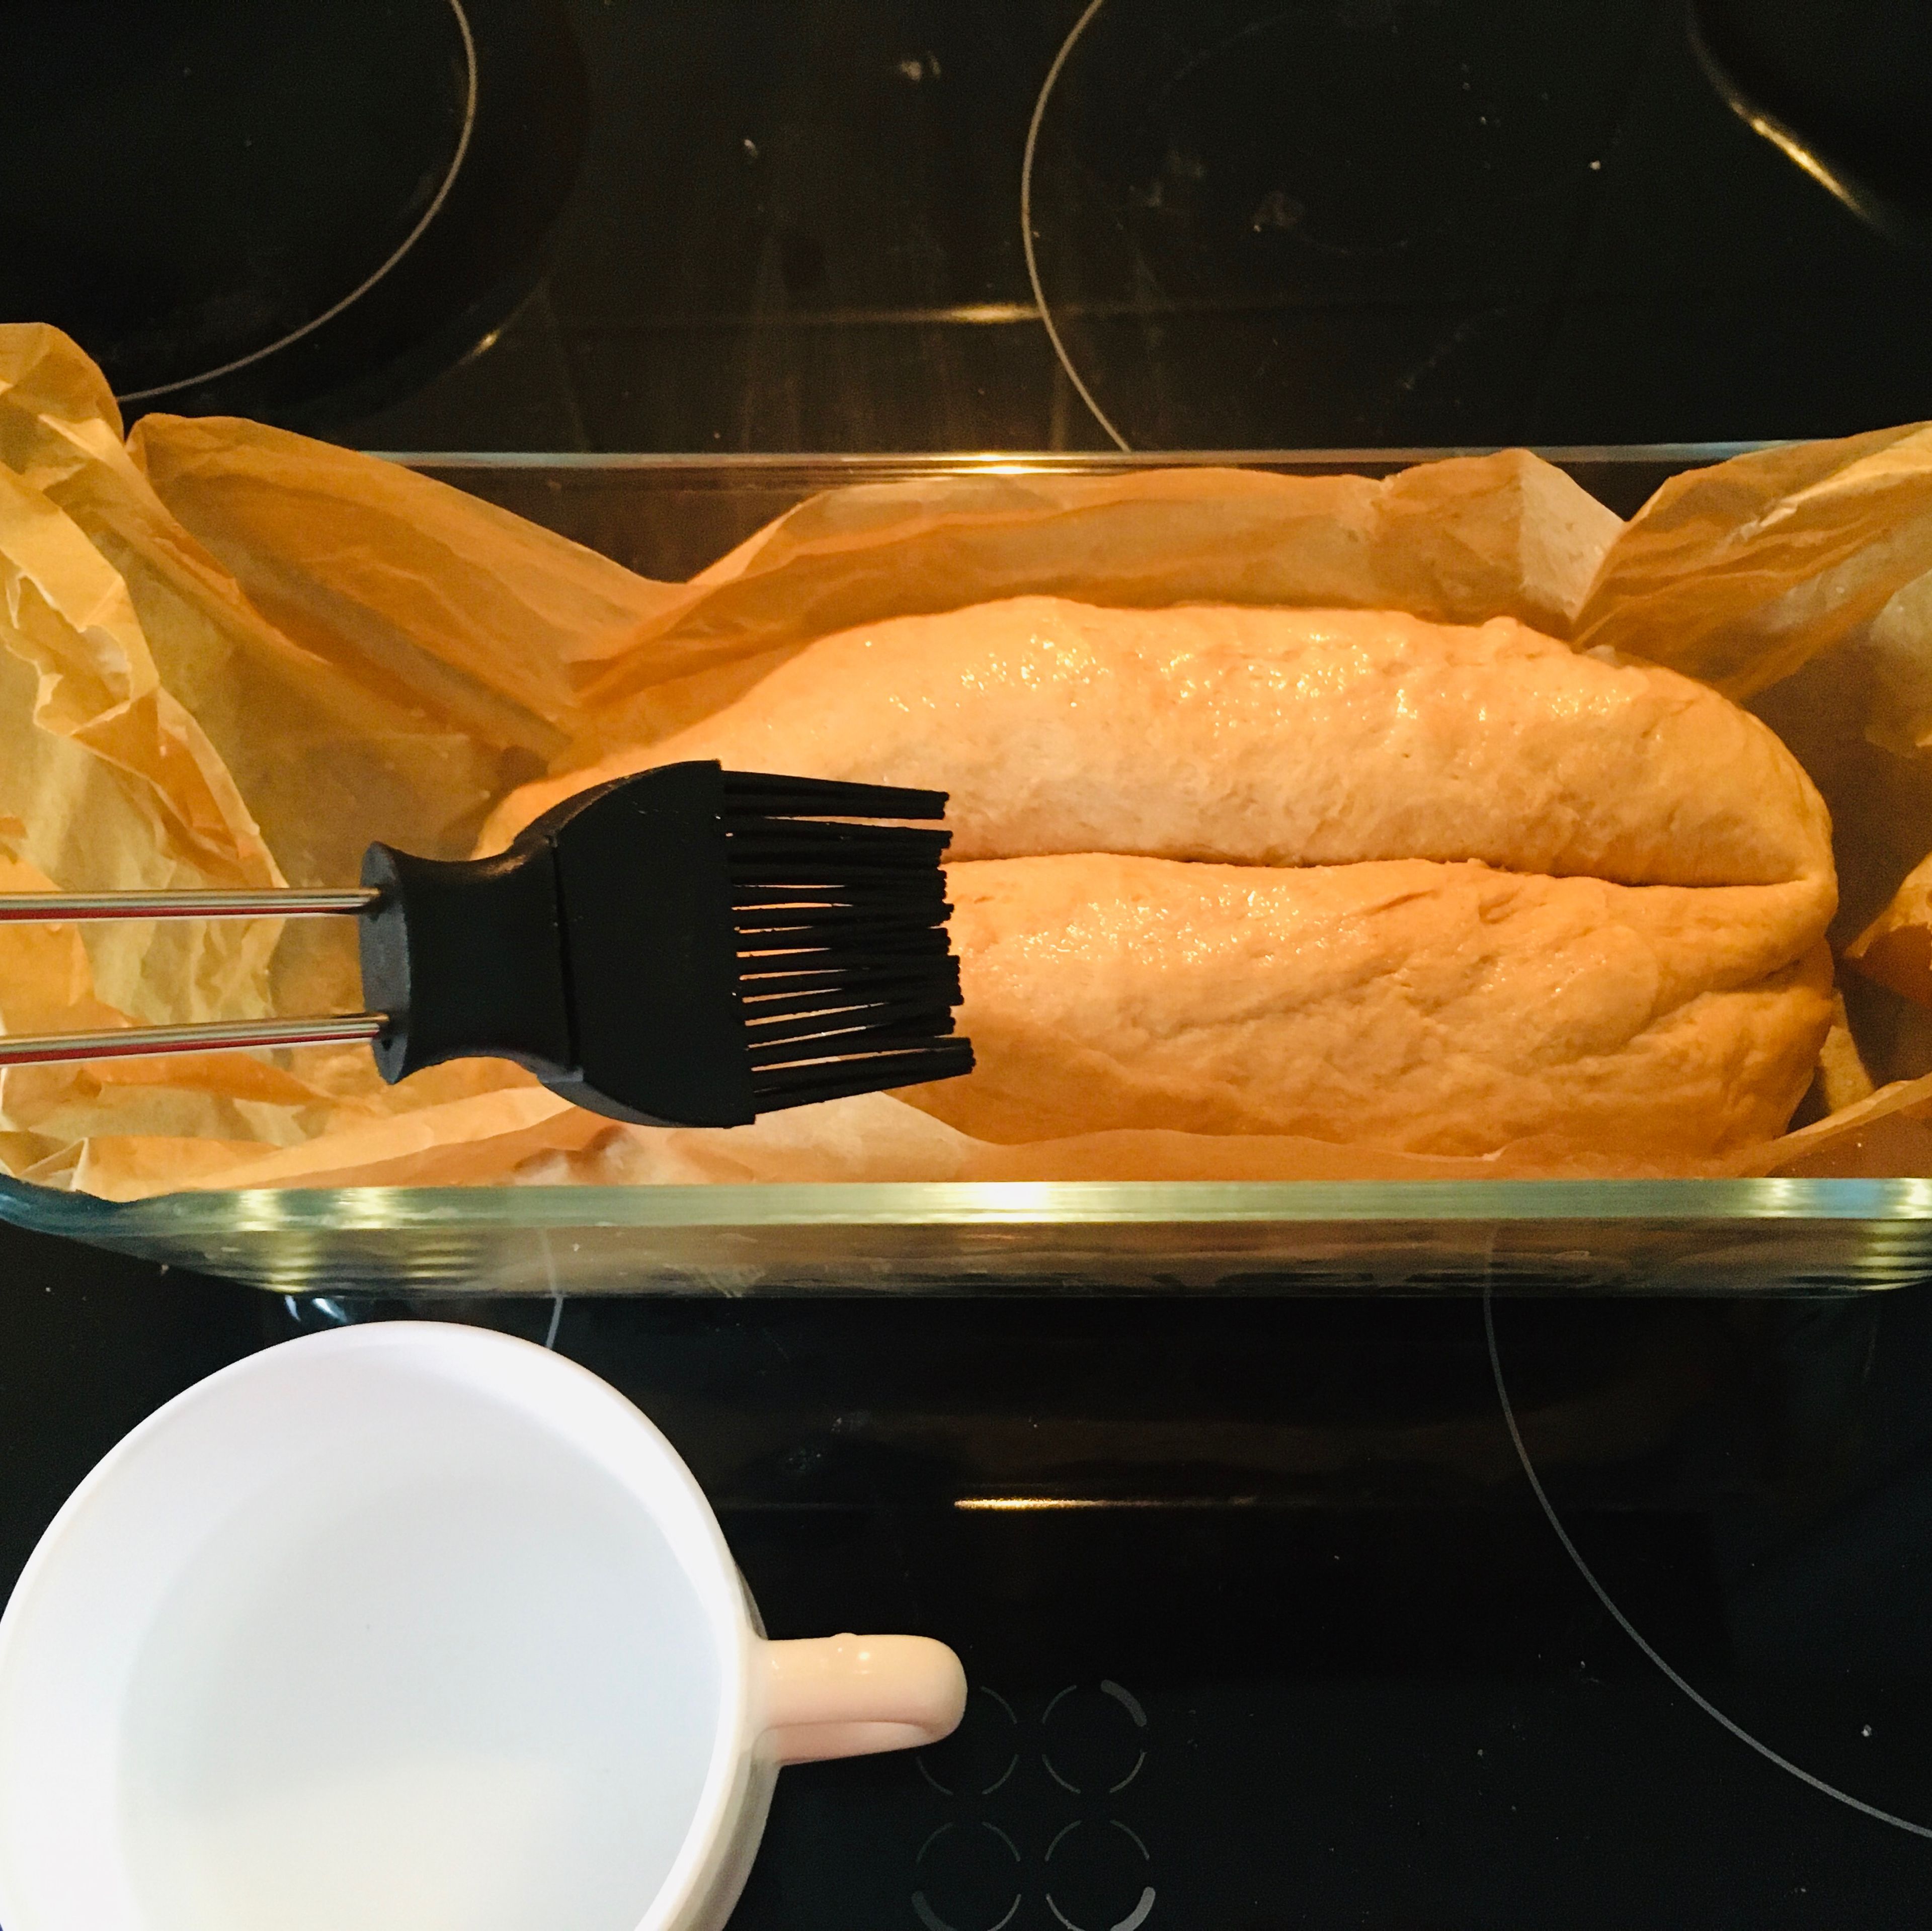 Das Brot mit etwas Wasser bepinseln. Diesen Vorgang etwa alle 10min beim Backen wiederholen.